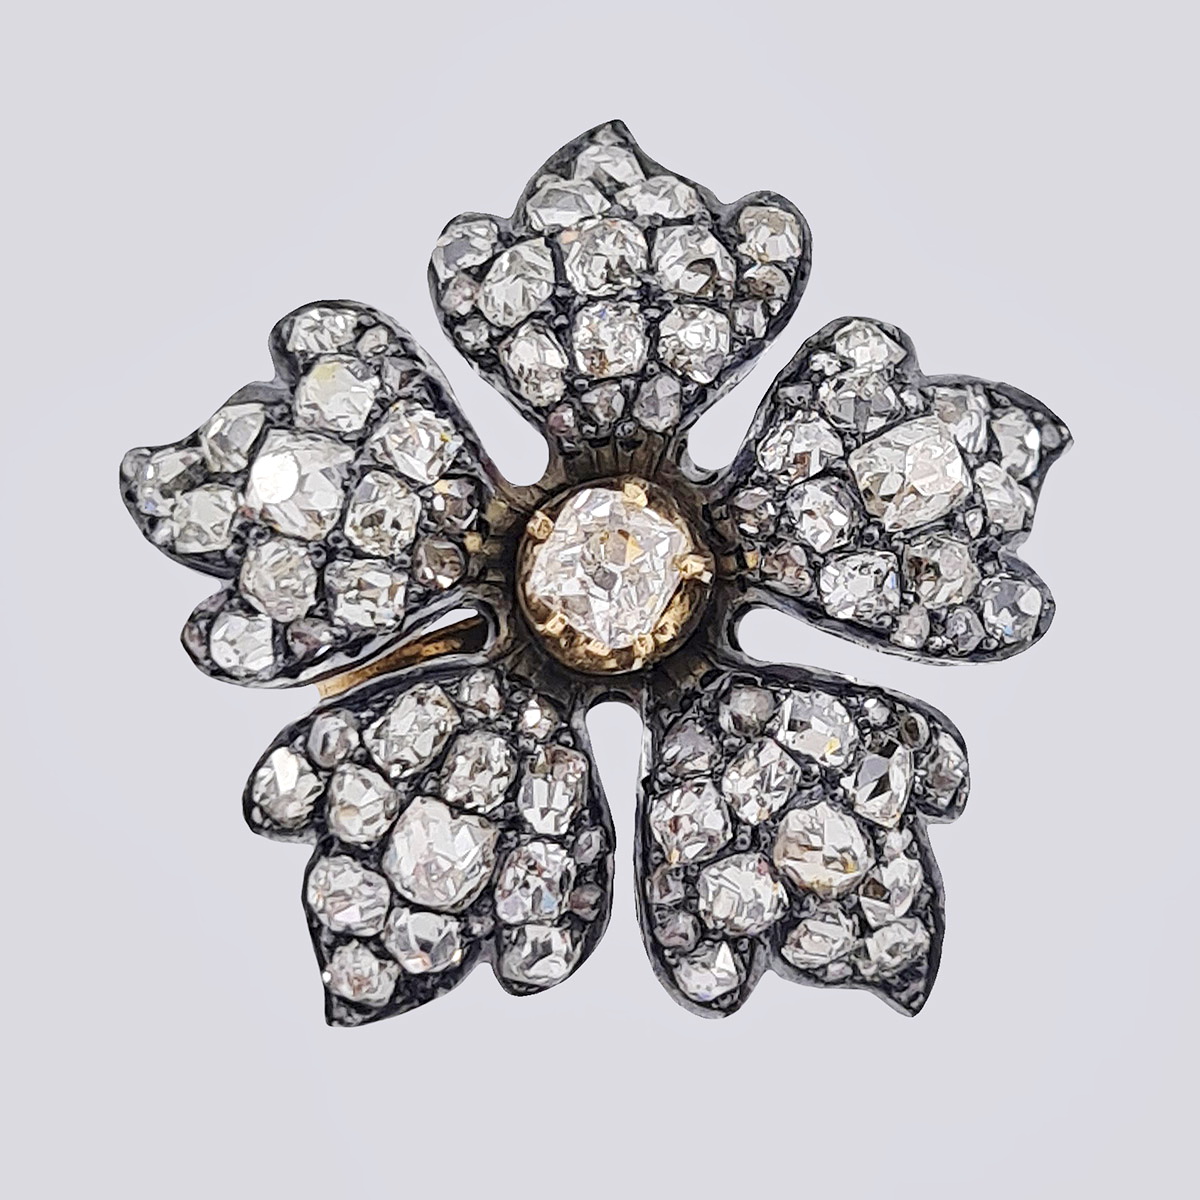 Антикварная золотая подвеска «Цветок» 56 пробы с бриллиантами старой огранки и алмазами